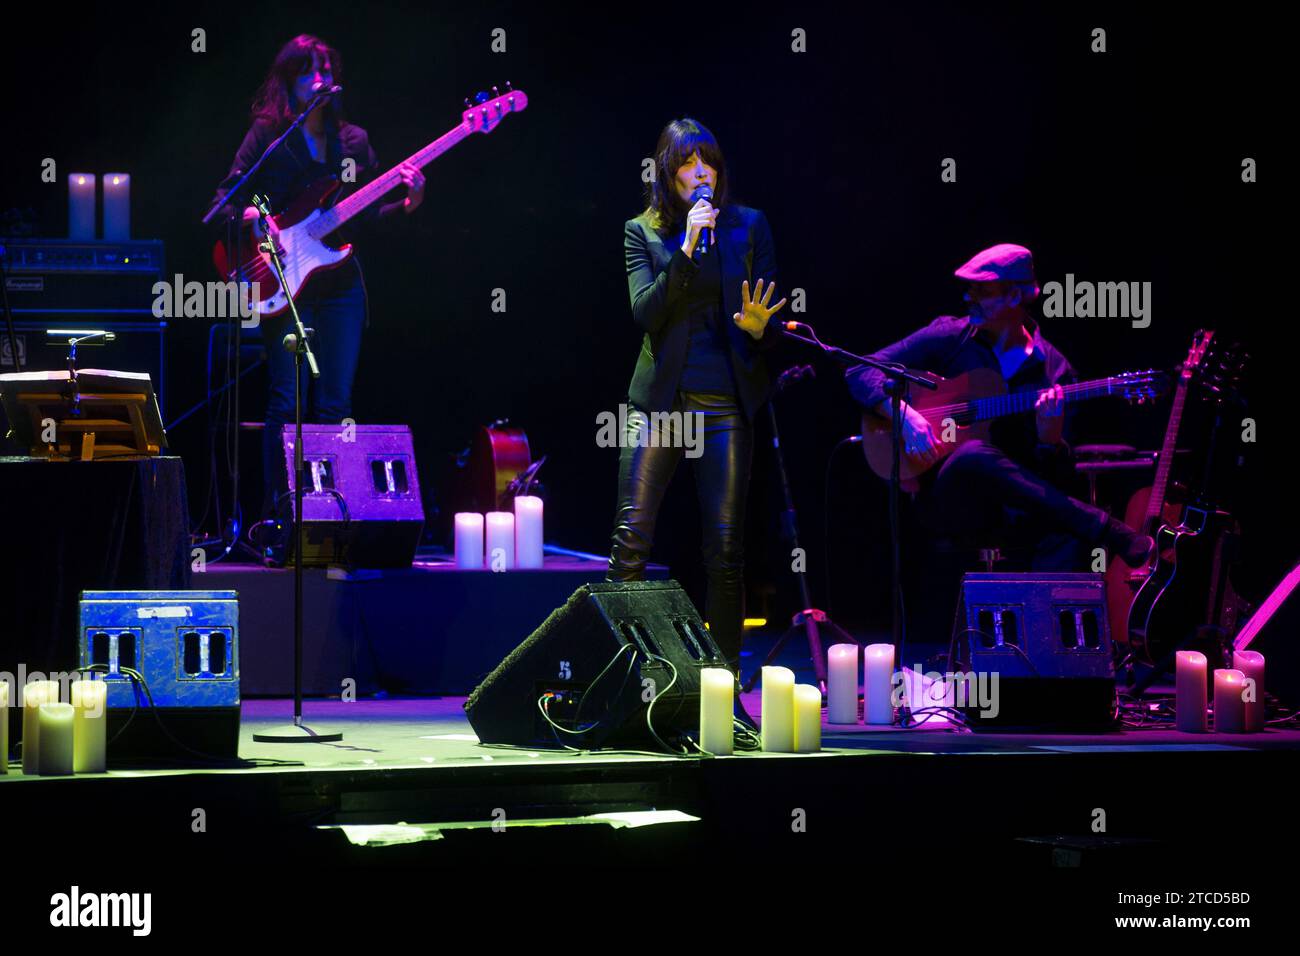 Madrid, 01/10/2018. Carla Bruni concert. Photo: Ángel de Antonio Archdc. Credit: Album / Archivo ABC / Ángel de Antonio Stock Photo